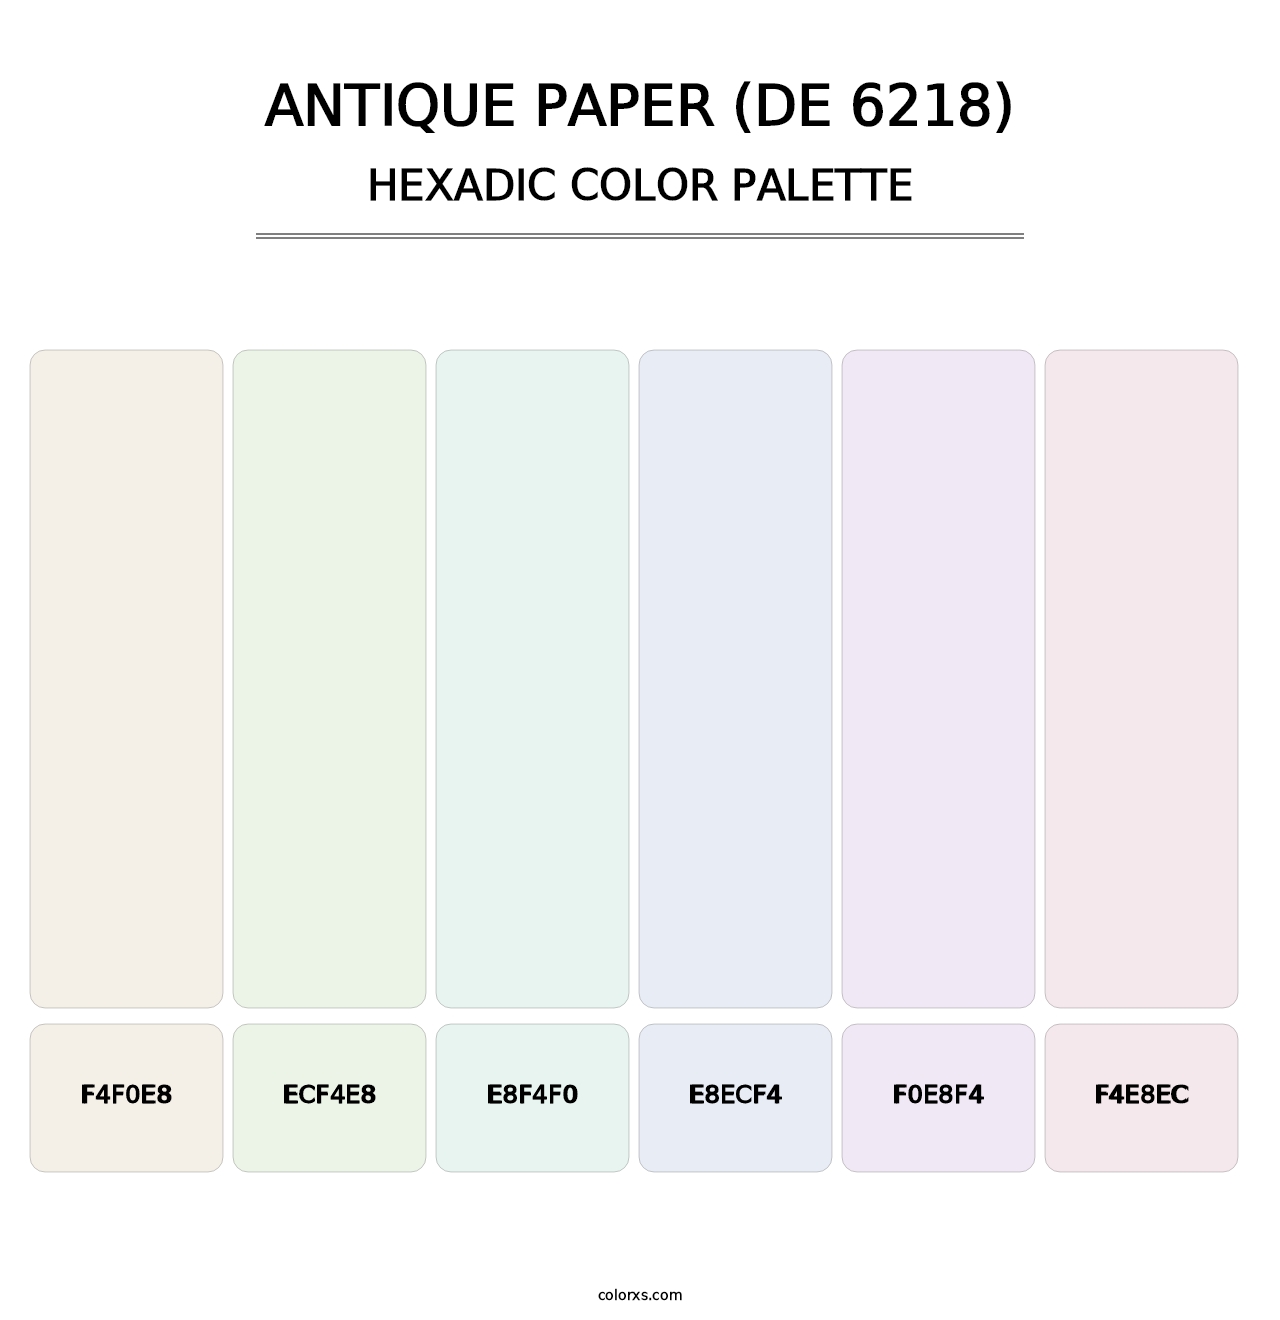 Antique Paper (DE 6218) - Hexadic Color Palette